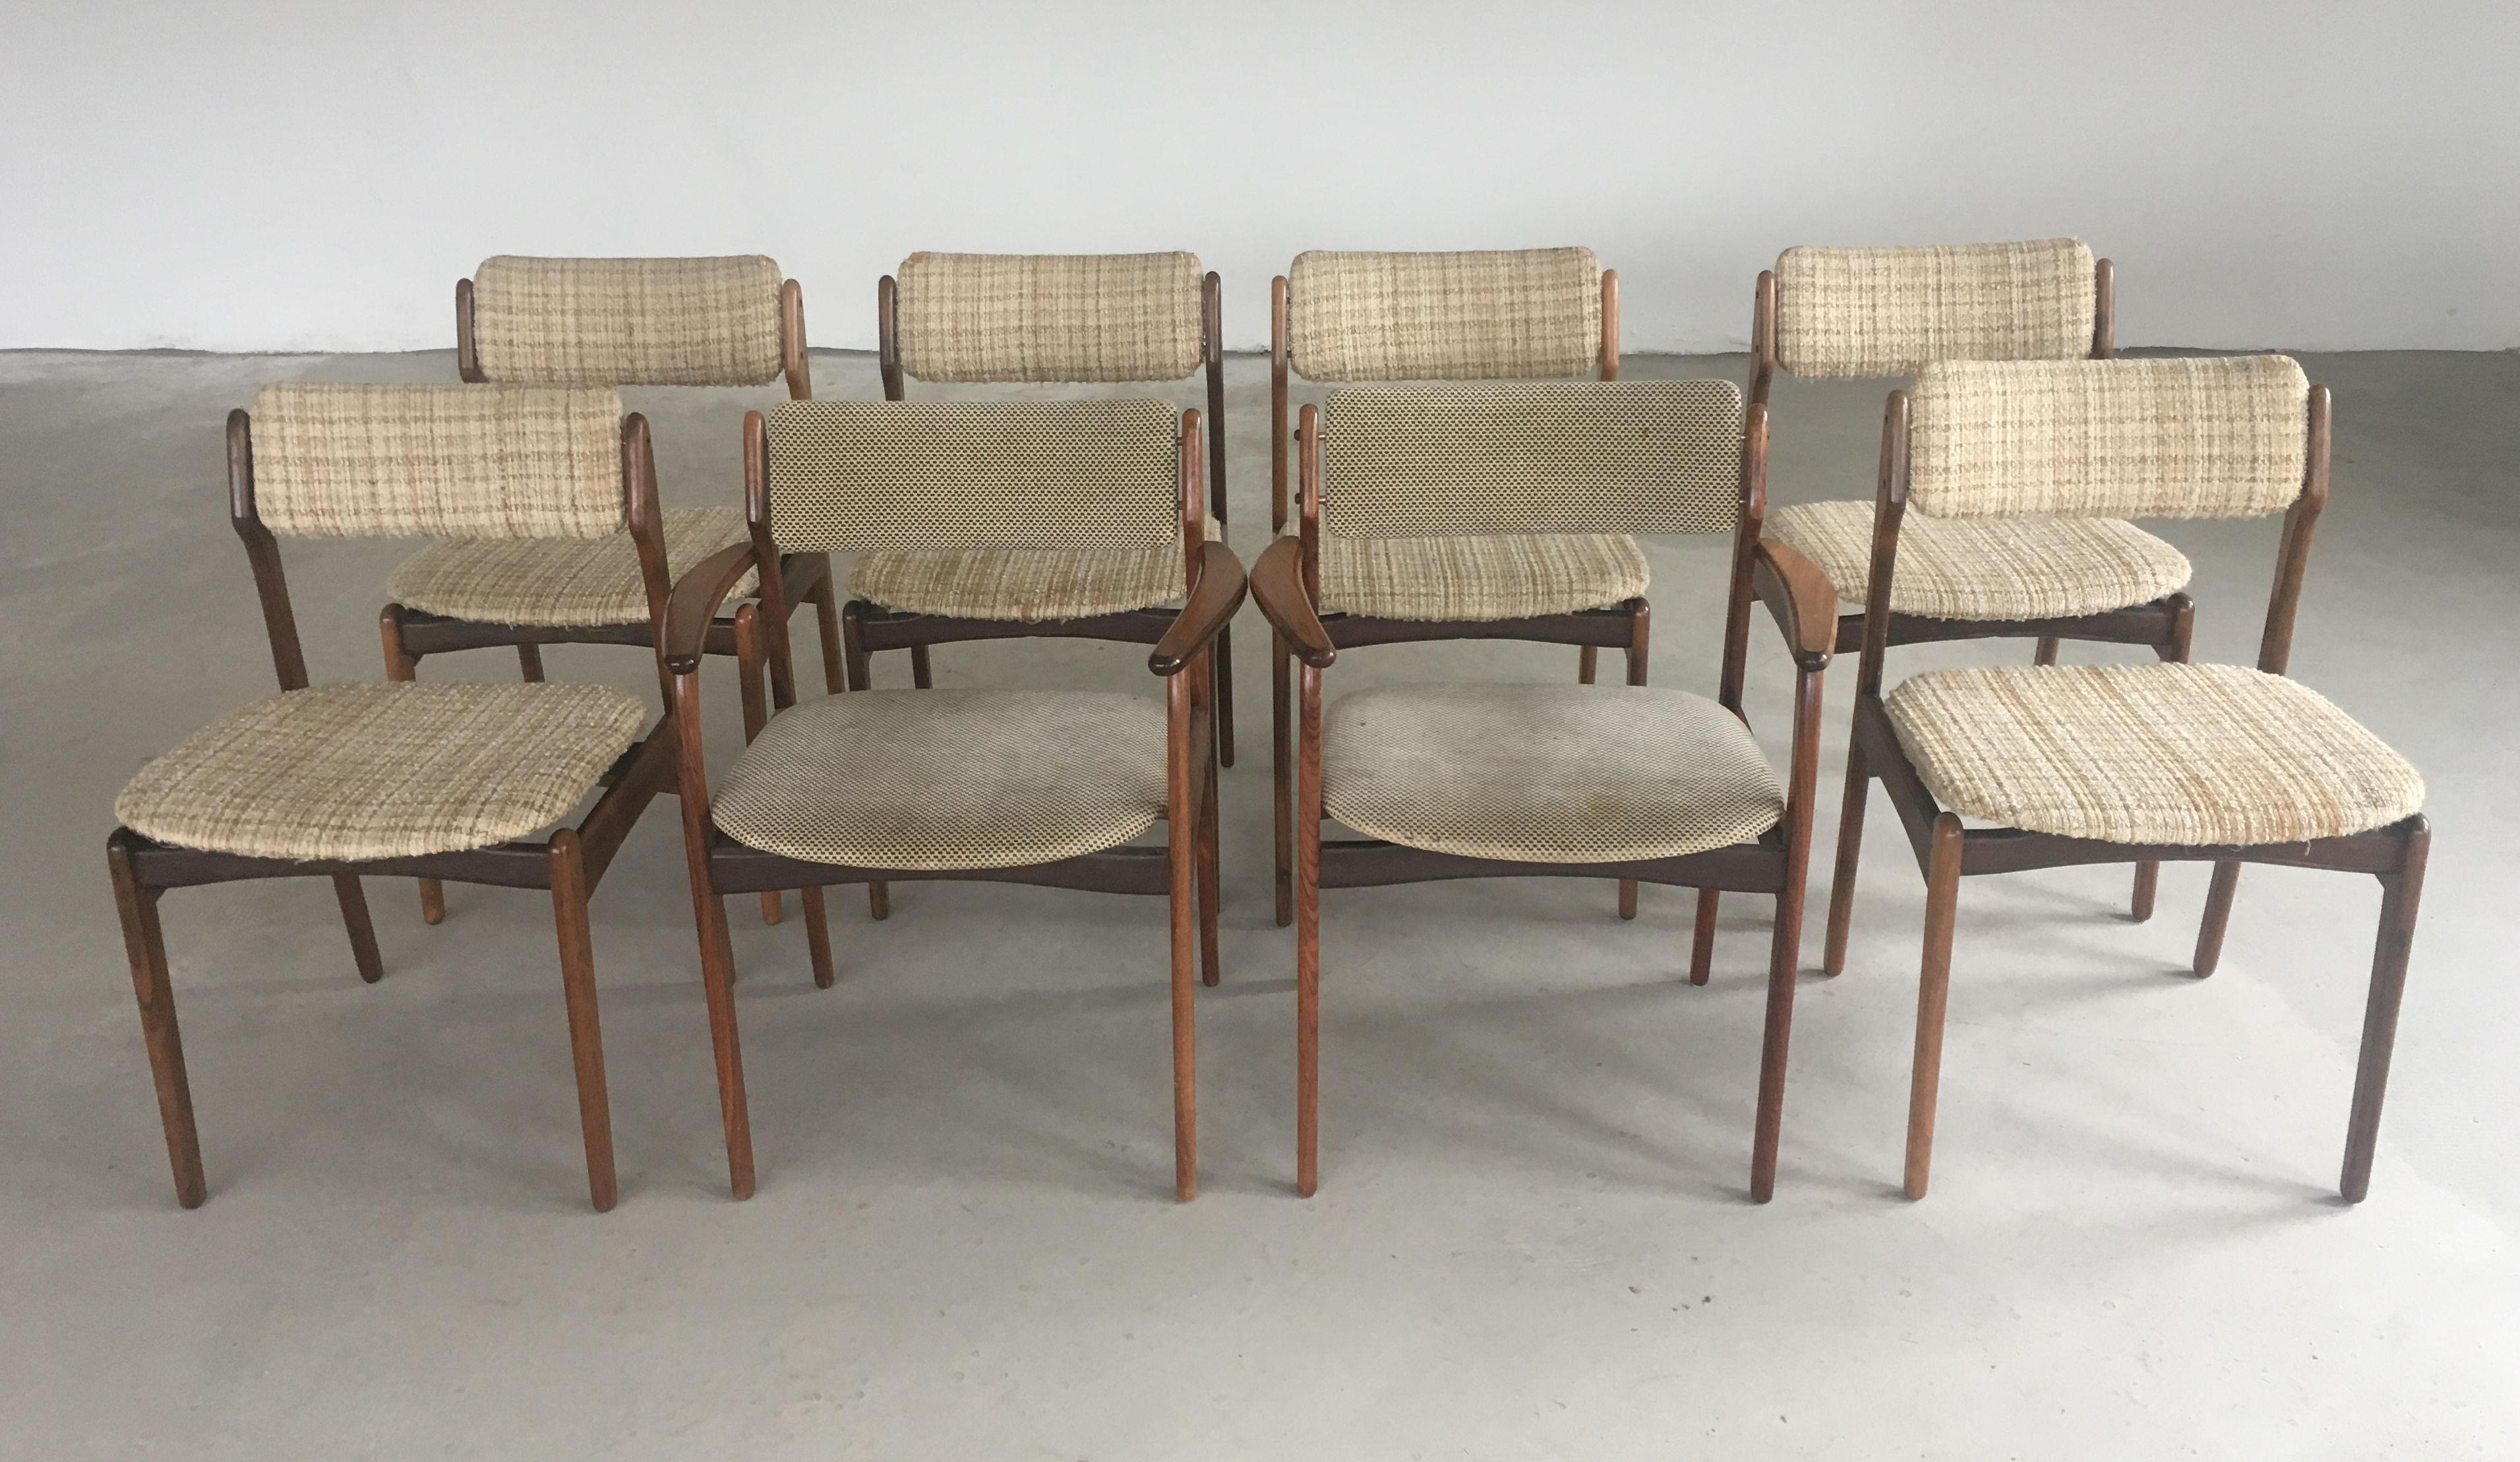 Rare ensemble de huit chaises de salle à manger exclusives Erik Buch en bois de rose des années 1960, comprenant 6 chaises de salle à manger et deux fauteuils.

Les chaises sont un développement du modèle 49 de la chaise à manger et du modèle 50 du